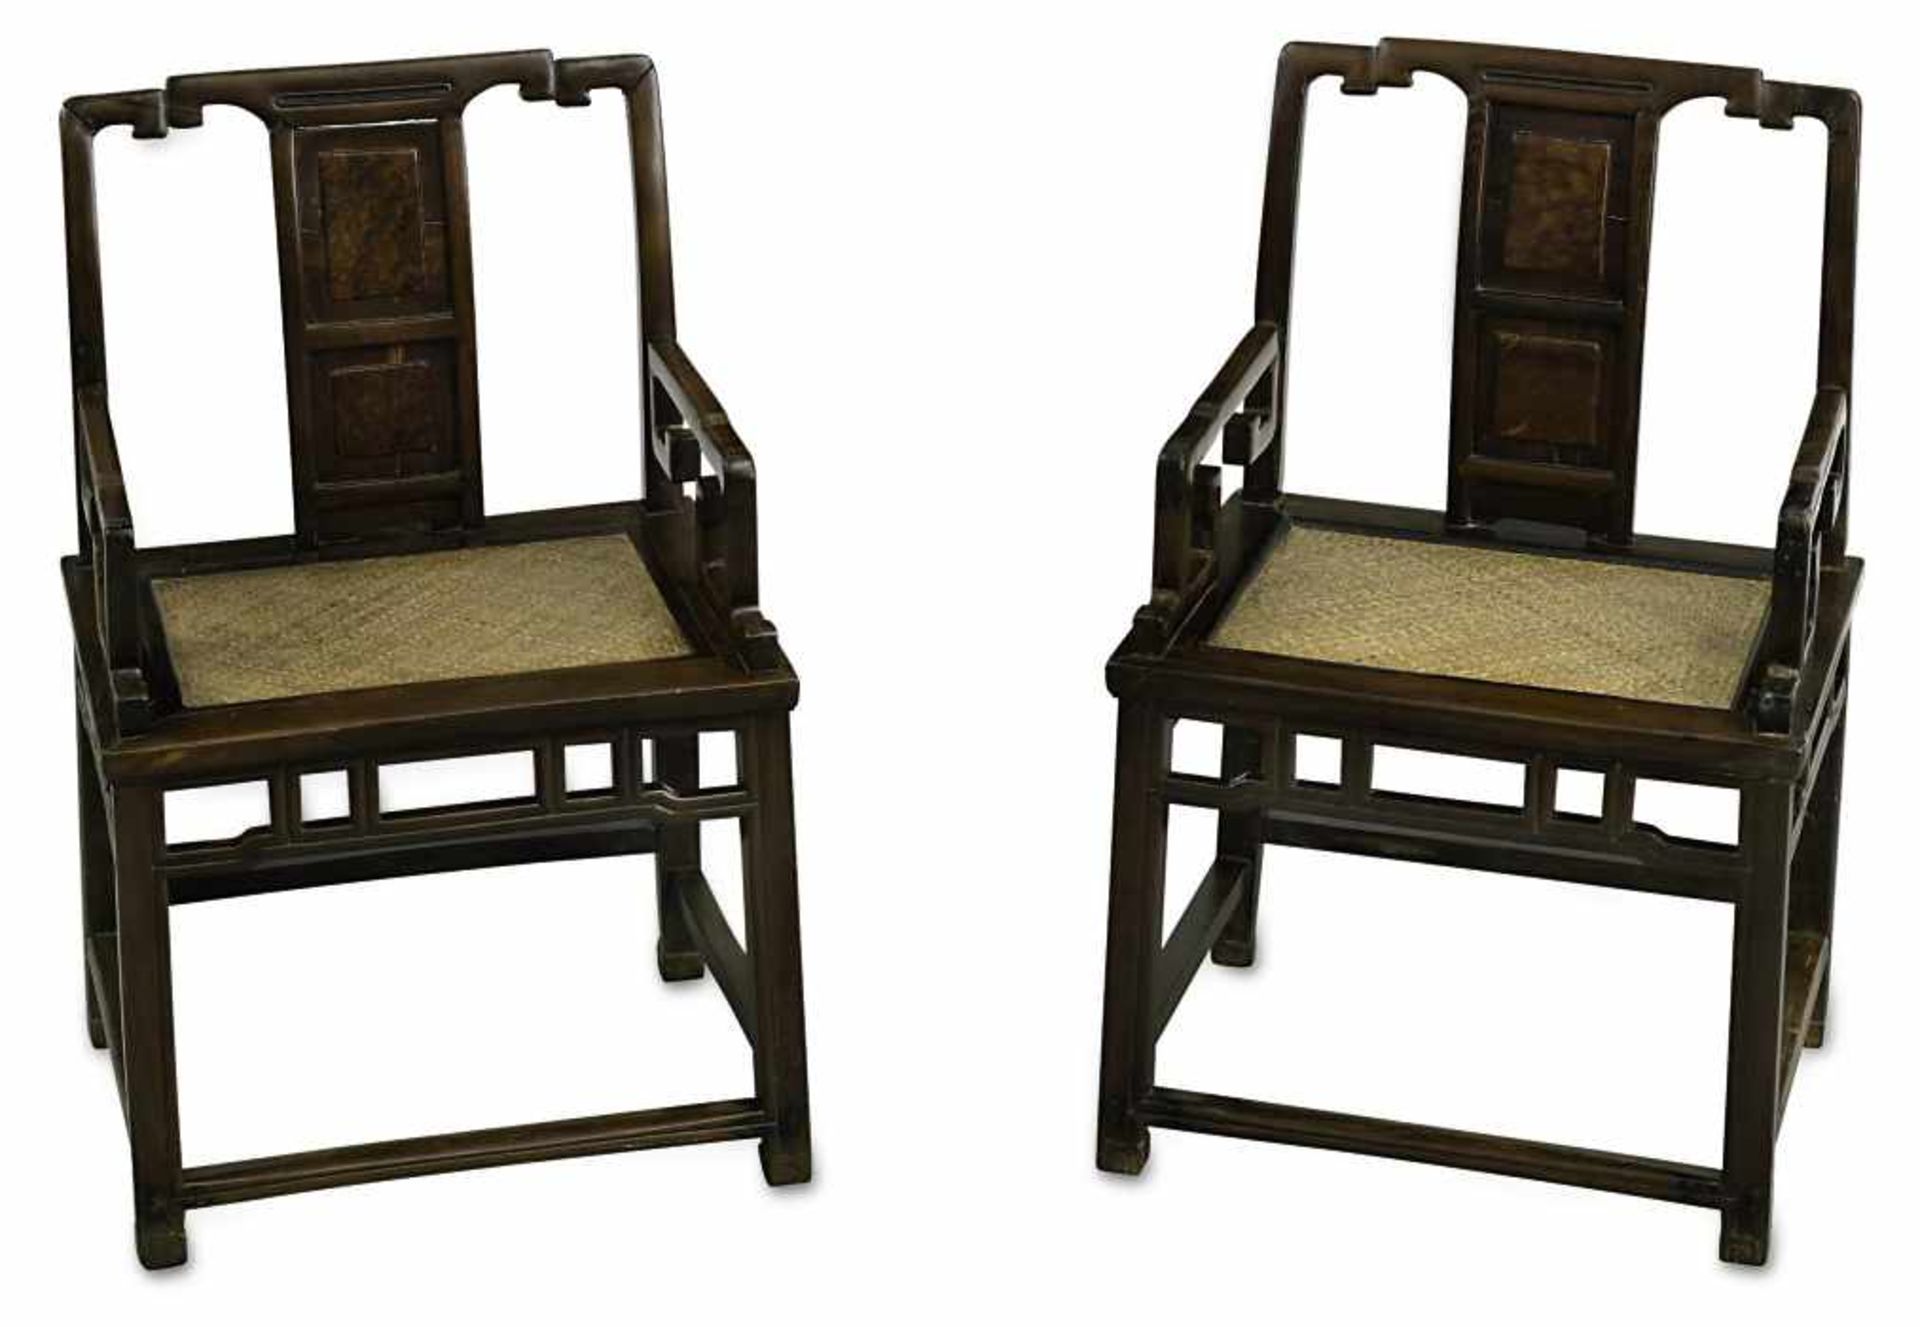 Paar ArmlehnstühleChina Hartholz, lackiert. Auf verstrebtem Gestell rechteckige Sitzfläche mit